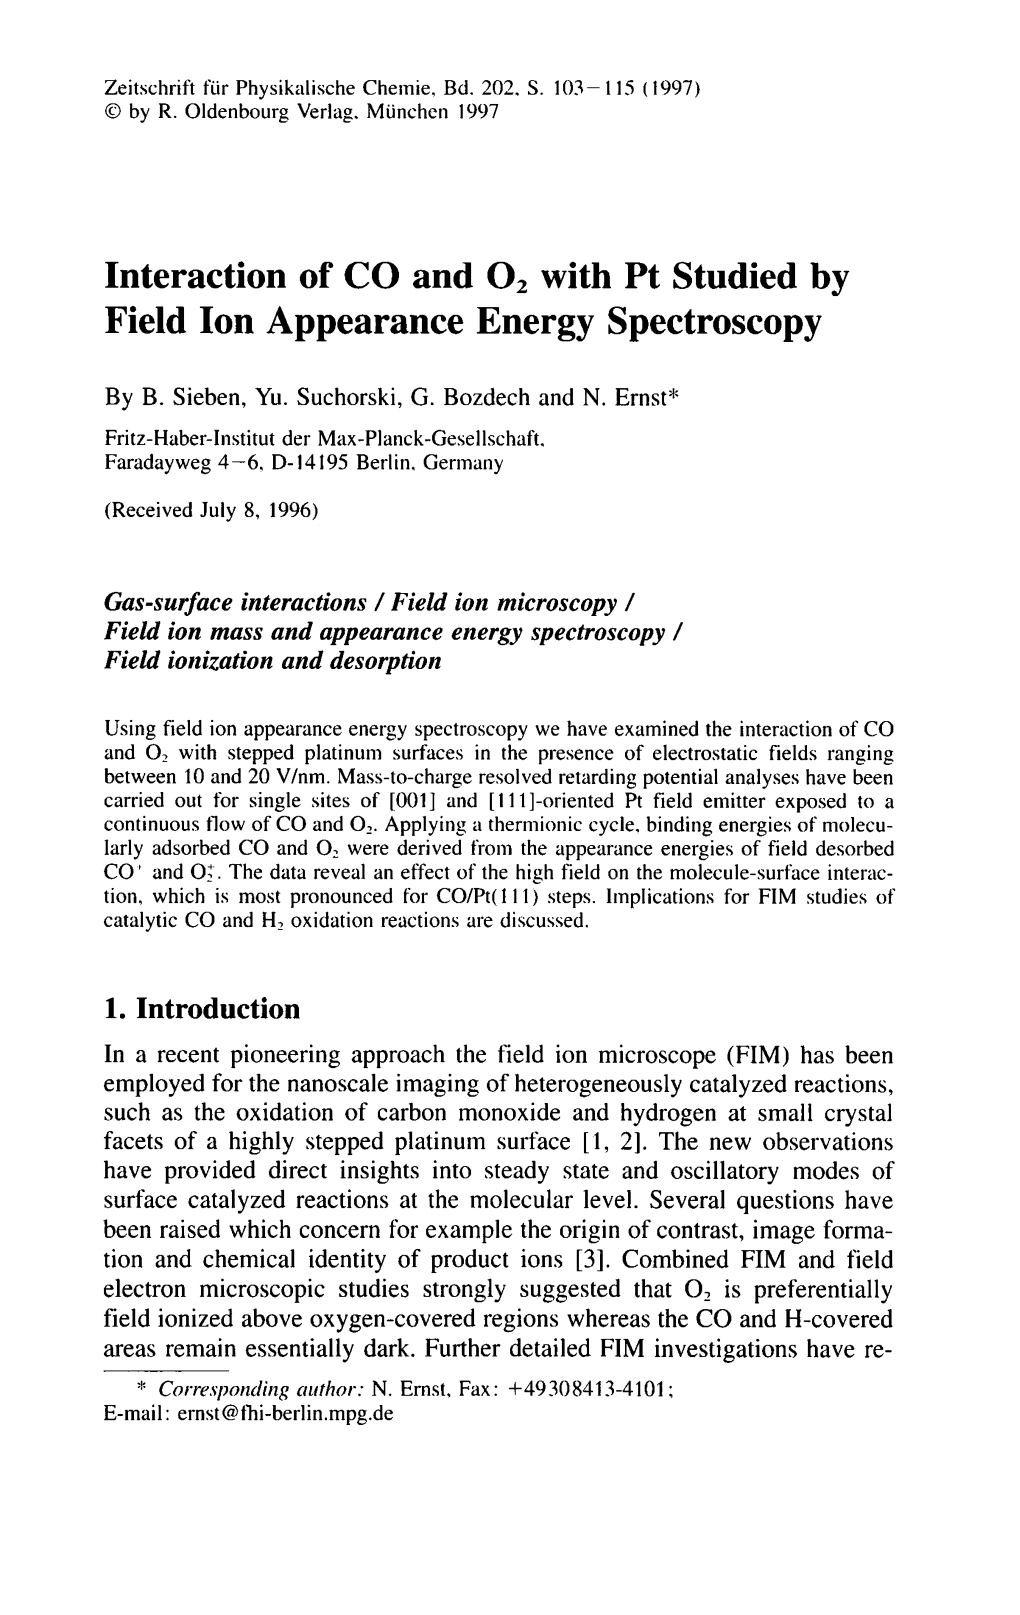 Field Ion Appearance Energy Spectroscopy